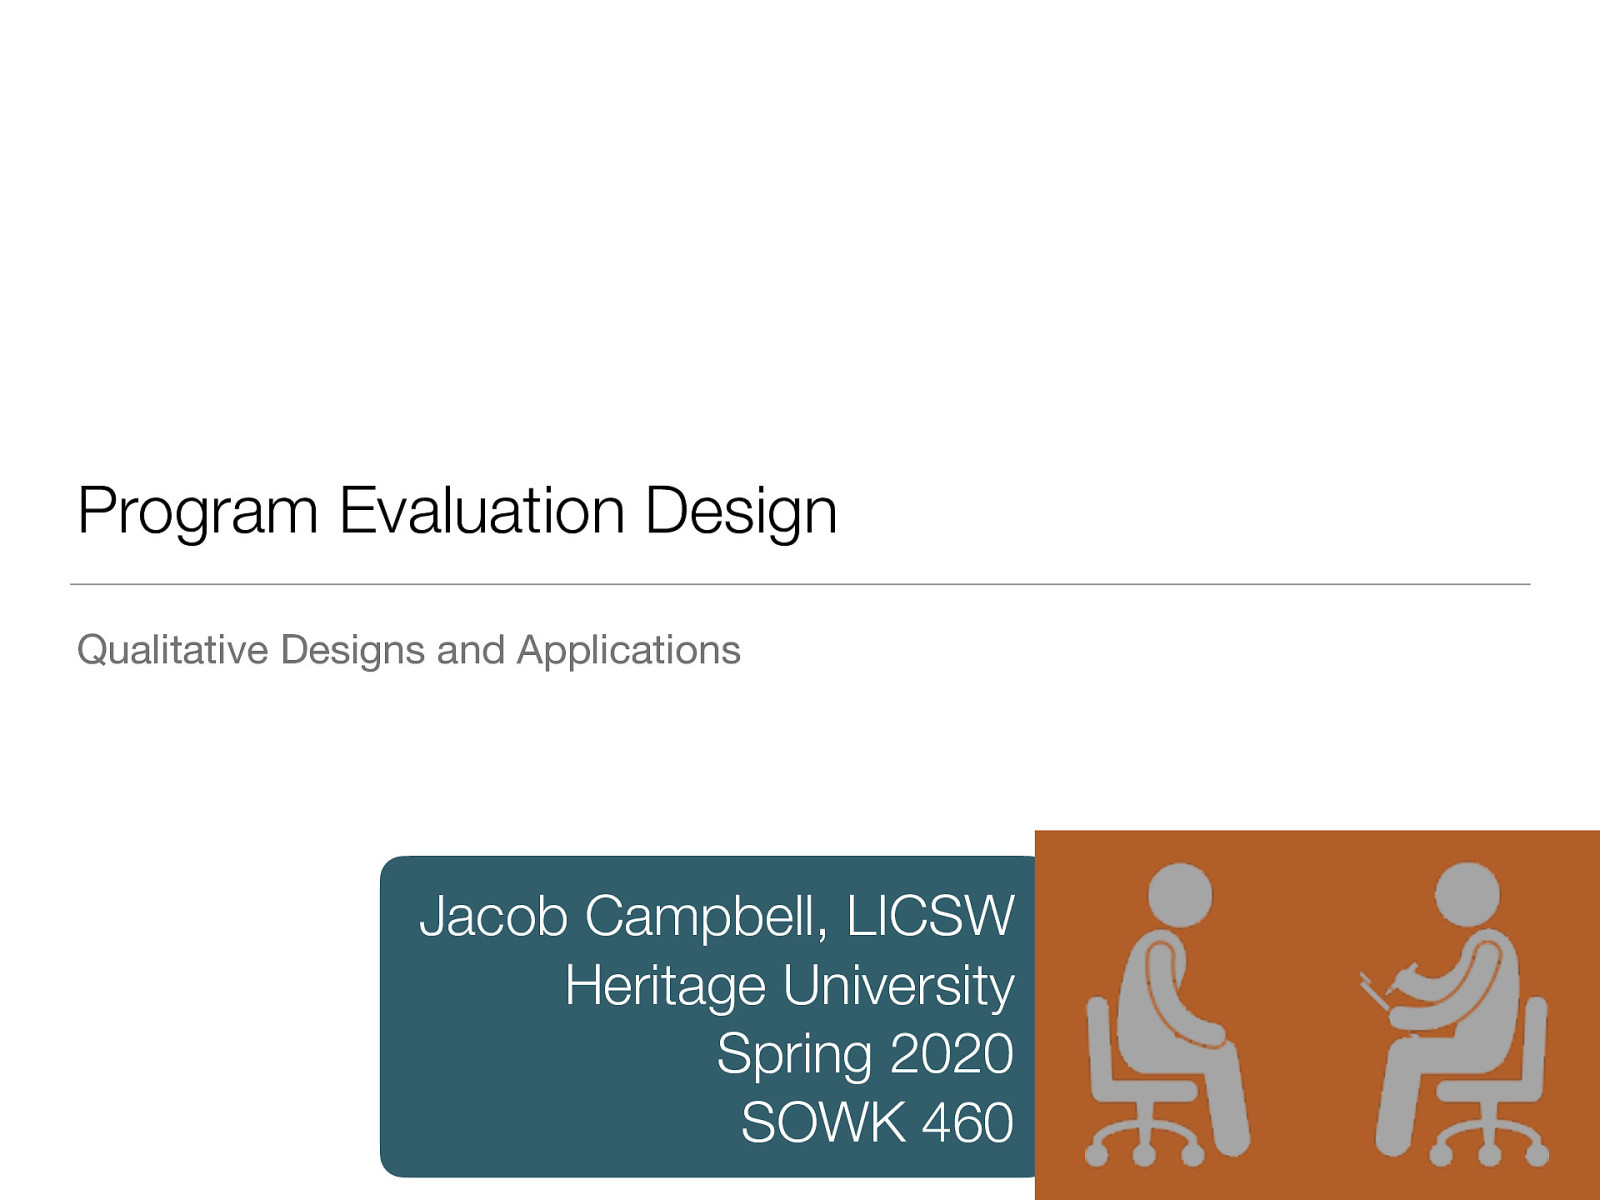 Week 11 - Qualitative Design Methods for Program Evaluation